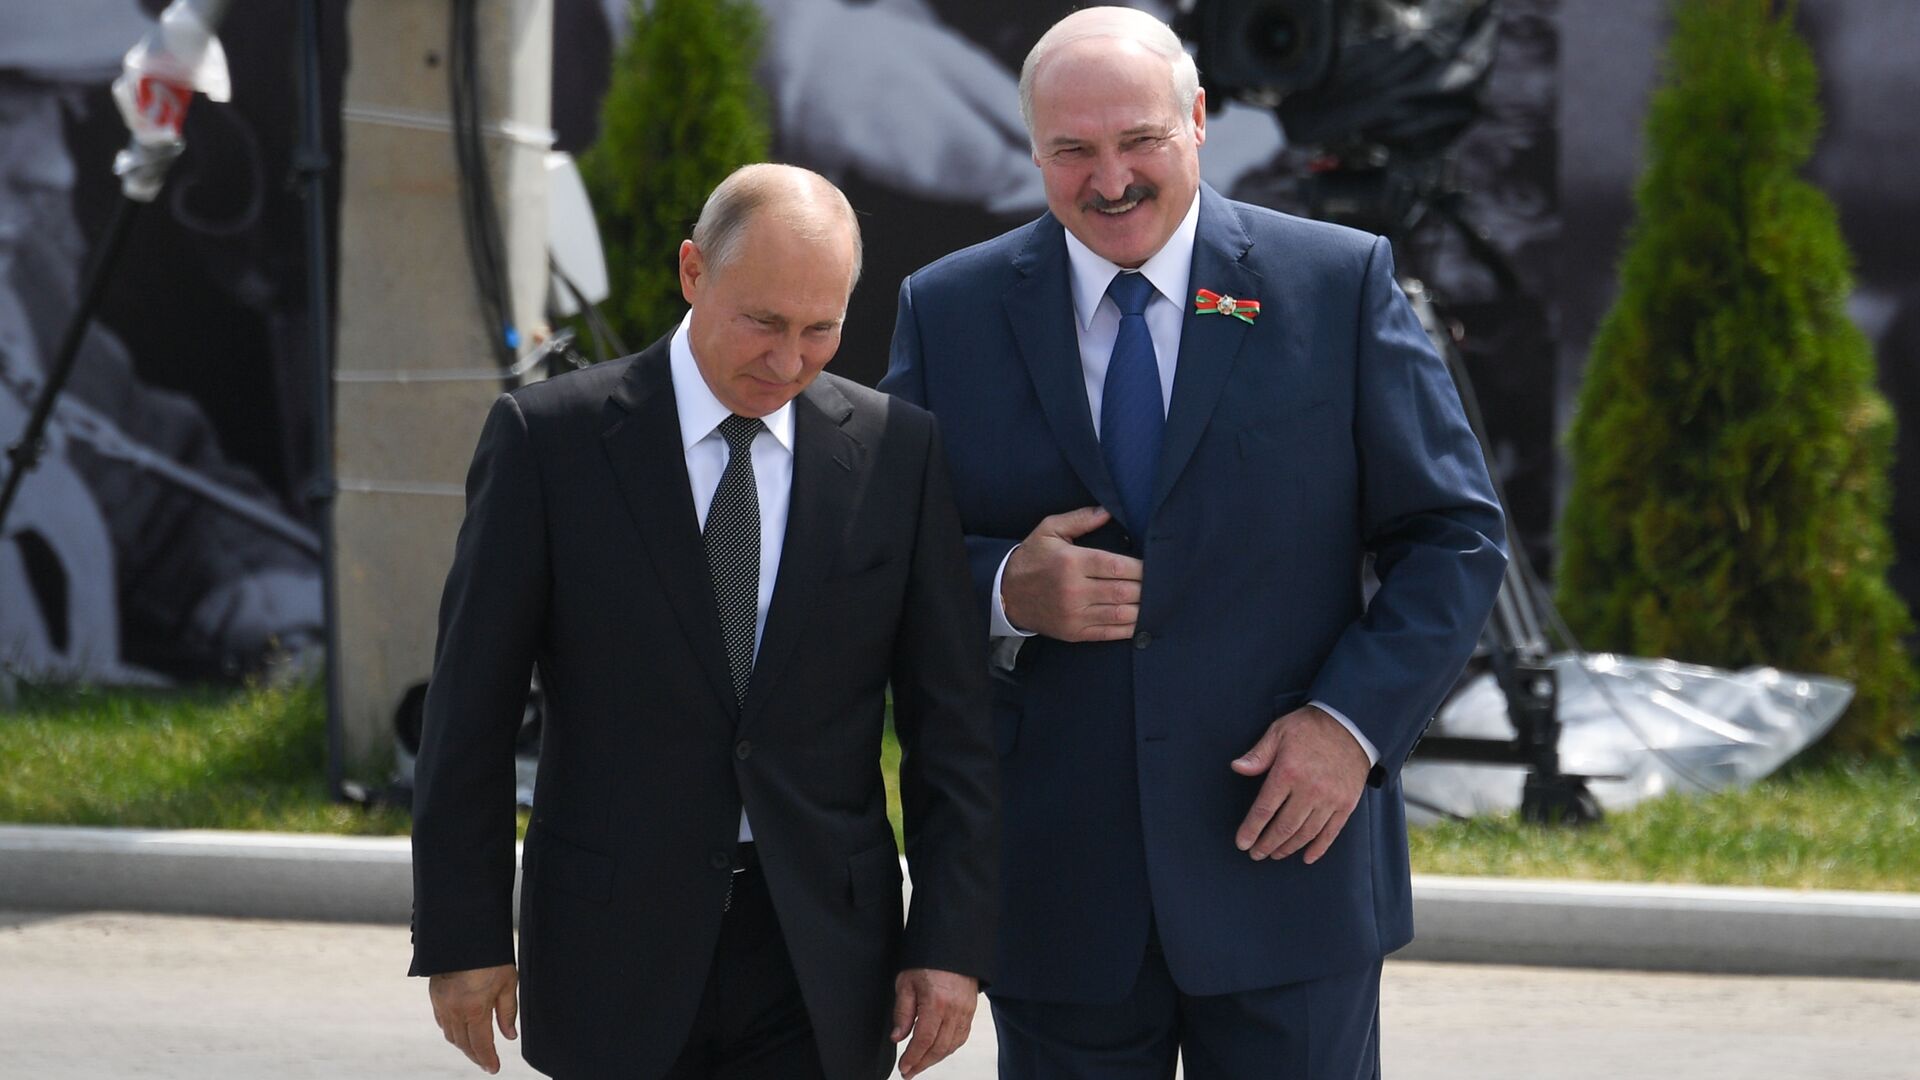  Belarus Prezidenti Aleksandr Lukaşenko və Rusiya prezidenti Vladimir Putin, arxiv şəkli - Sputnik Azərbaycan, 1920, 02.12.2021